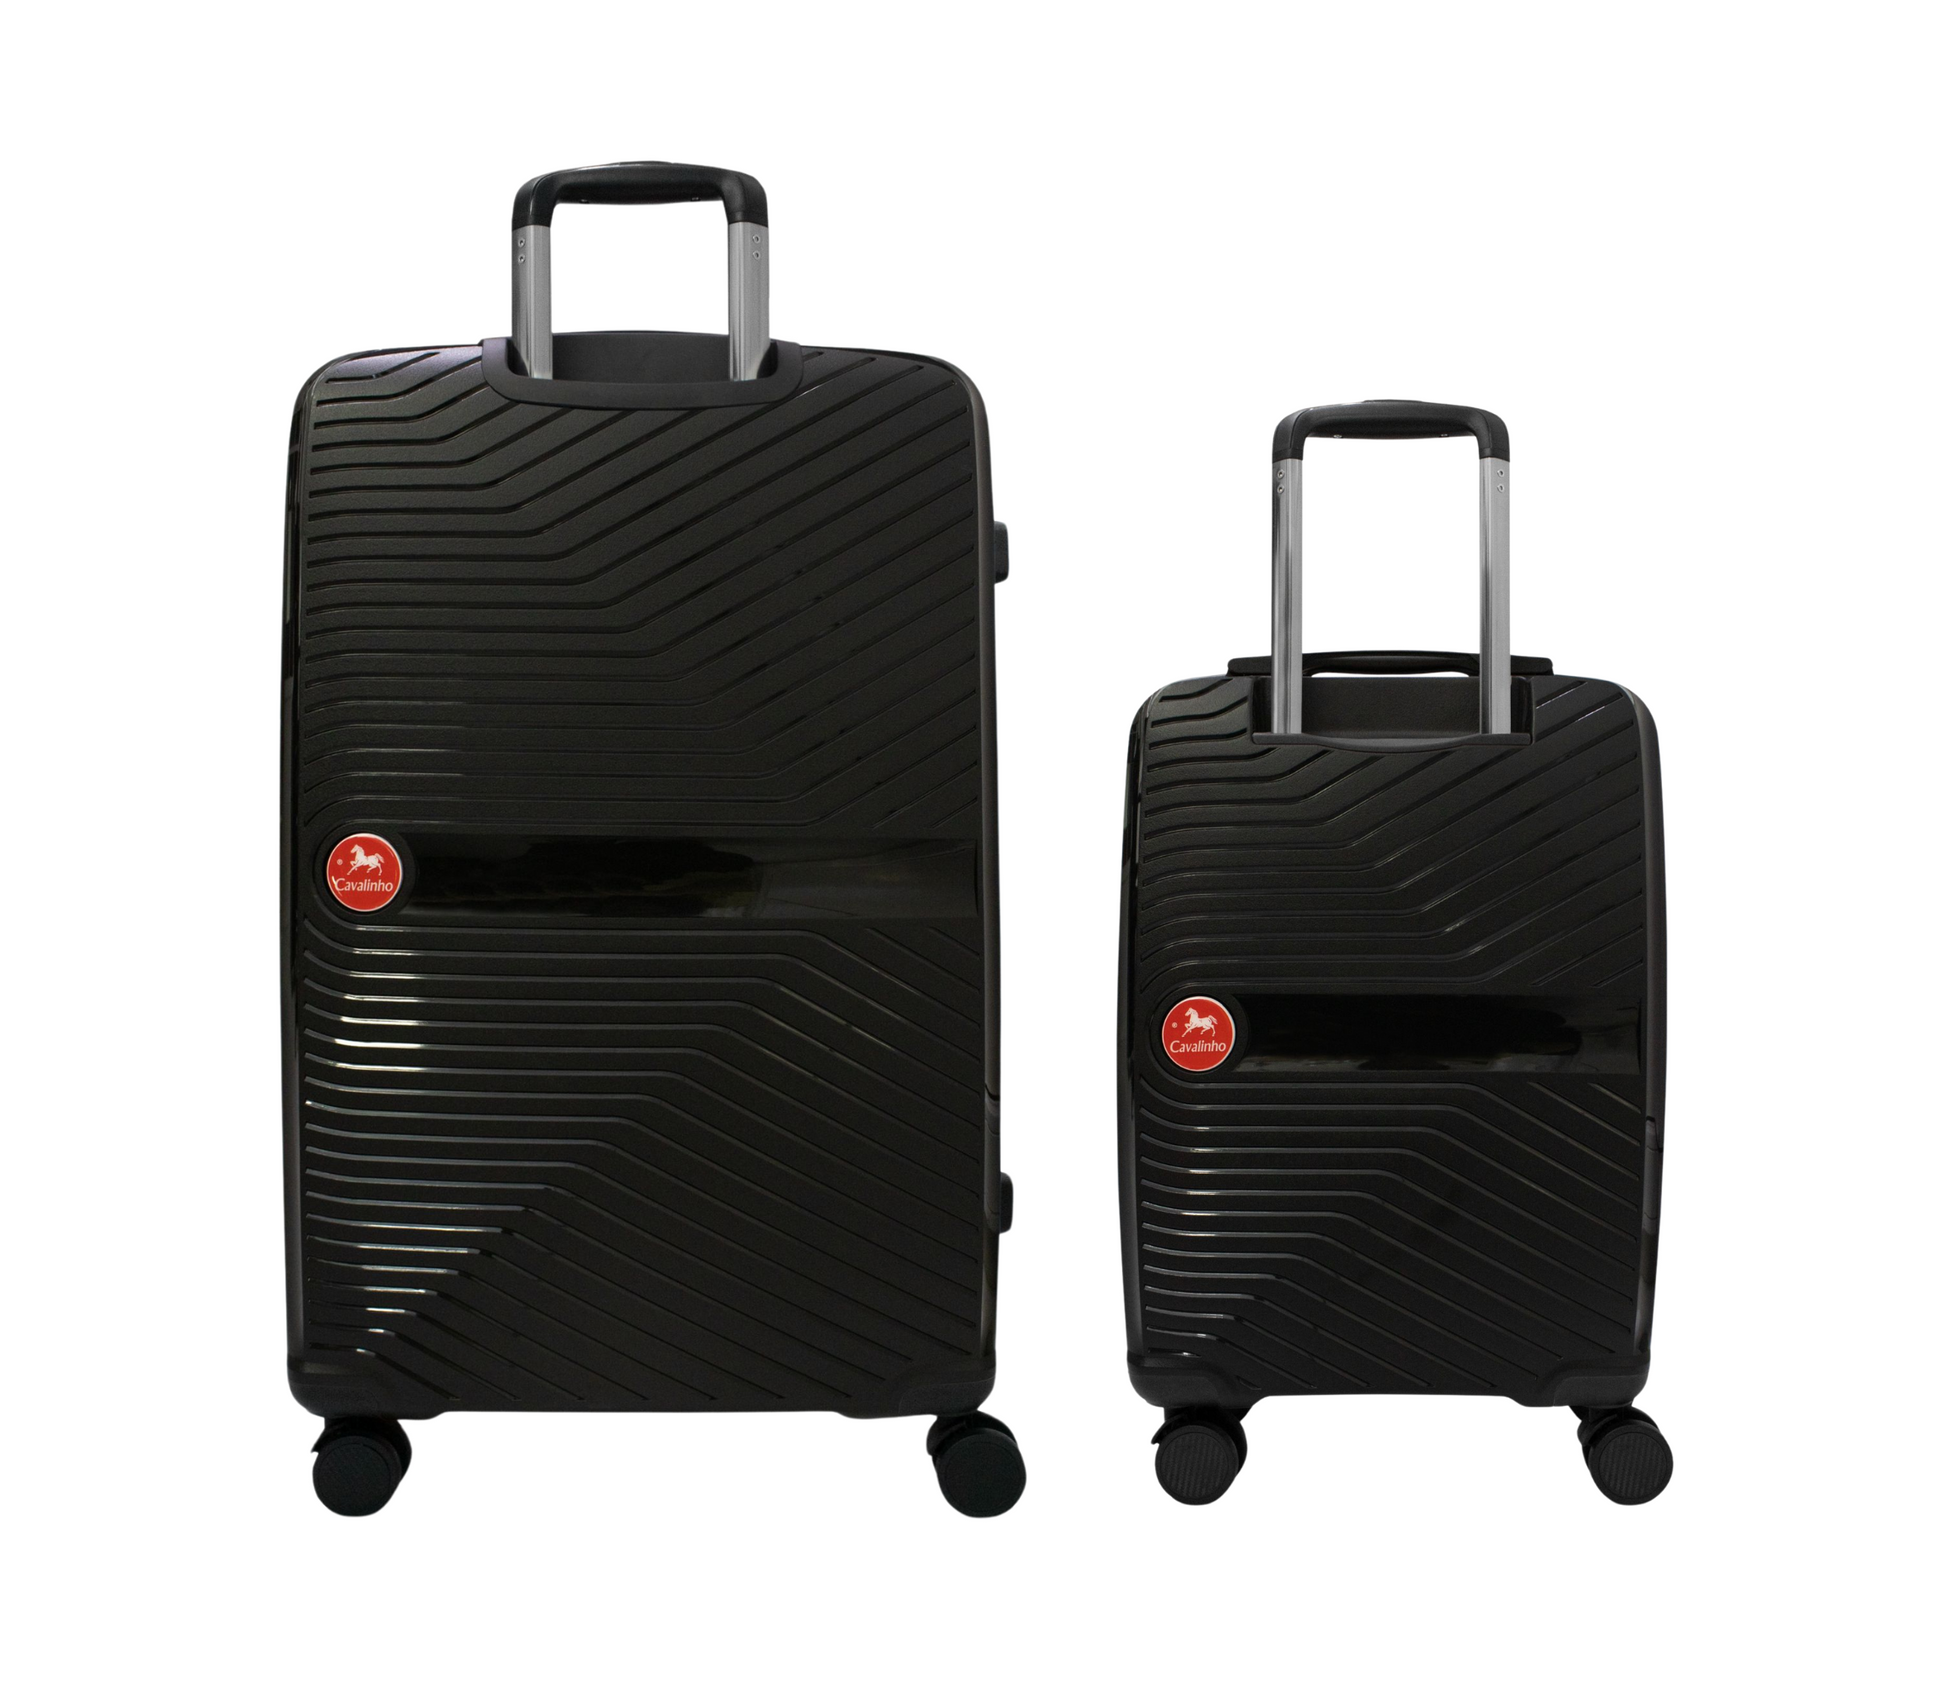 #color_ Black Black | Cavalinho Canada & USA Colorful 2 Piece Luggage Set (19" & 28") - Black Black - 68020004.0101.S1928._3